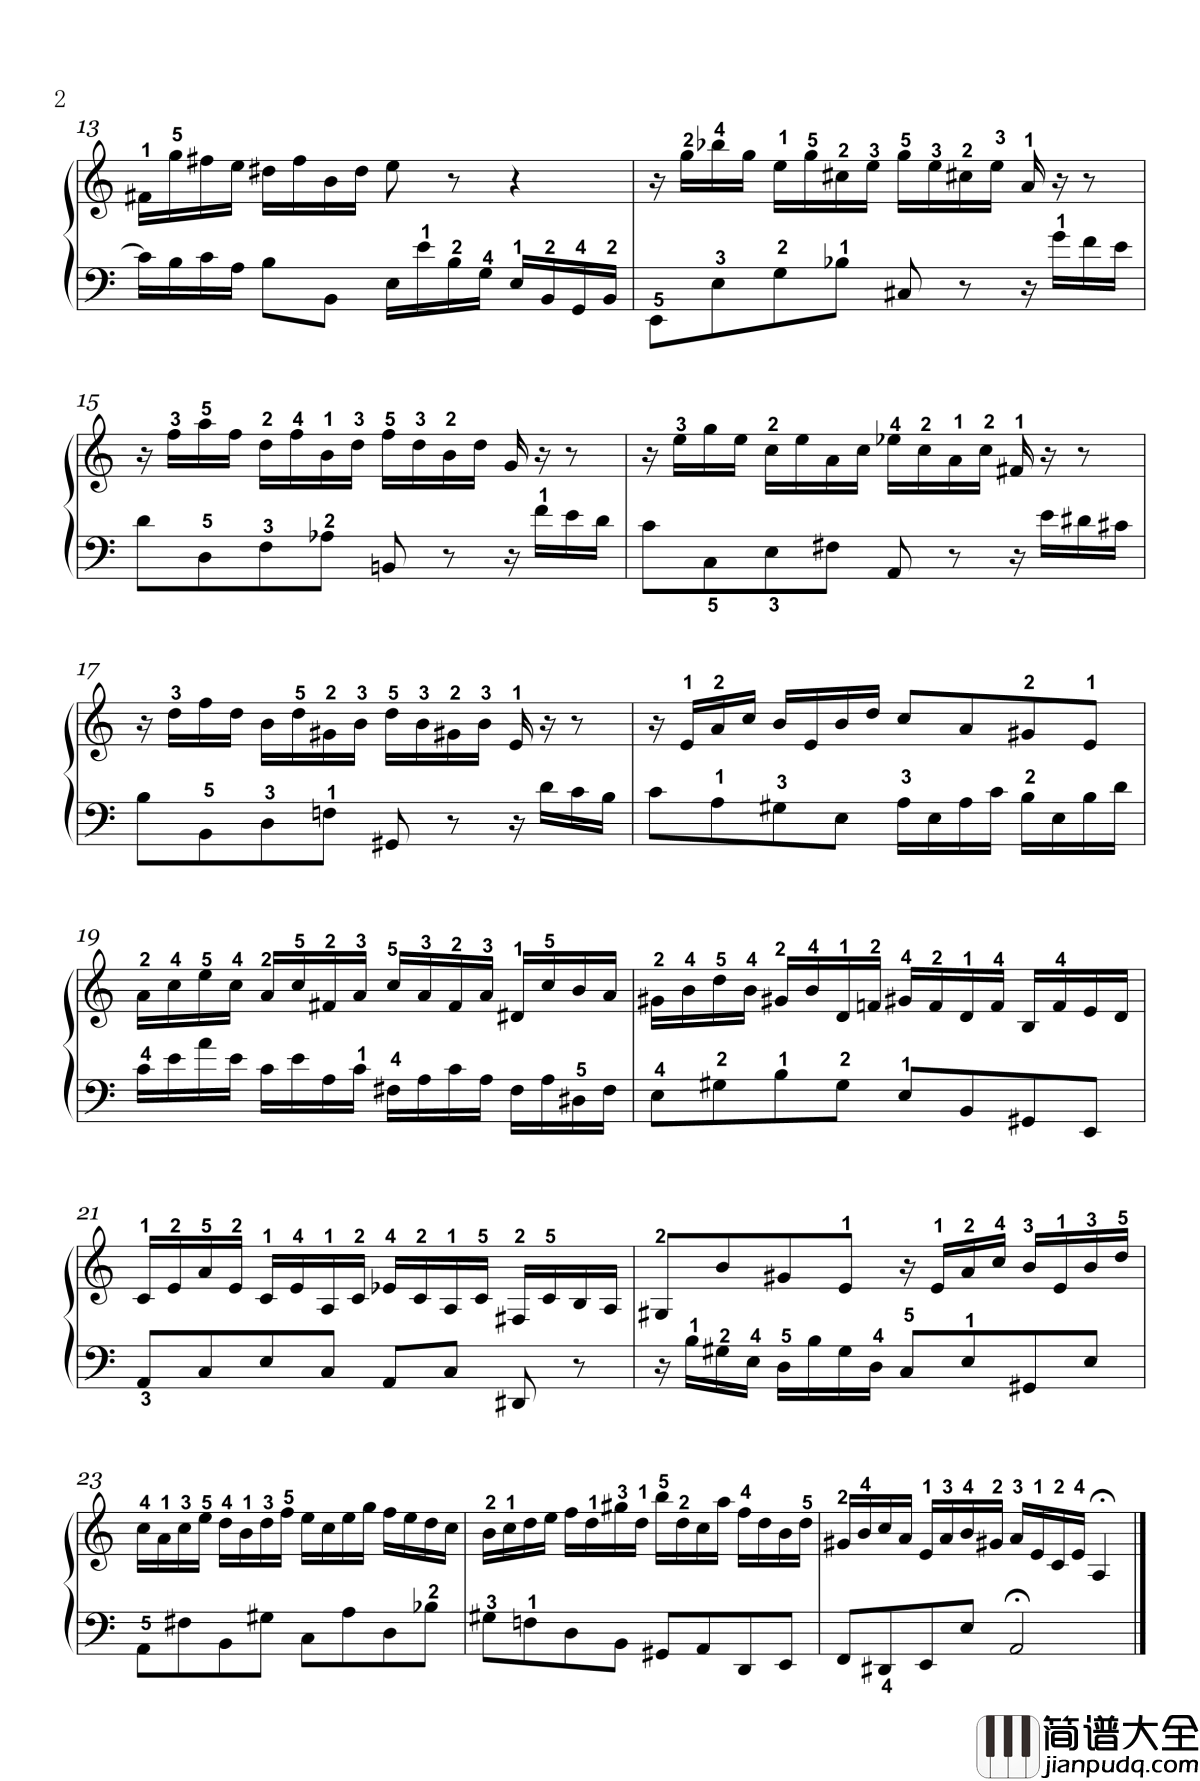 二部创意曲钢琴谱_13_bwv784_详细指法_巴赫_P.E.Bach